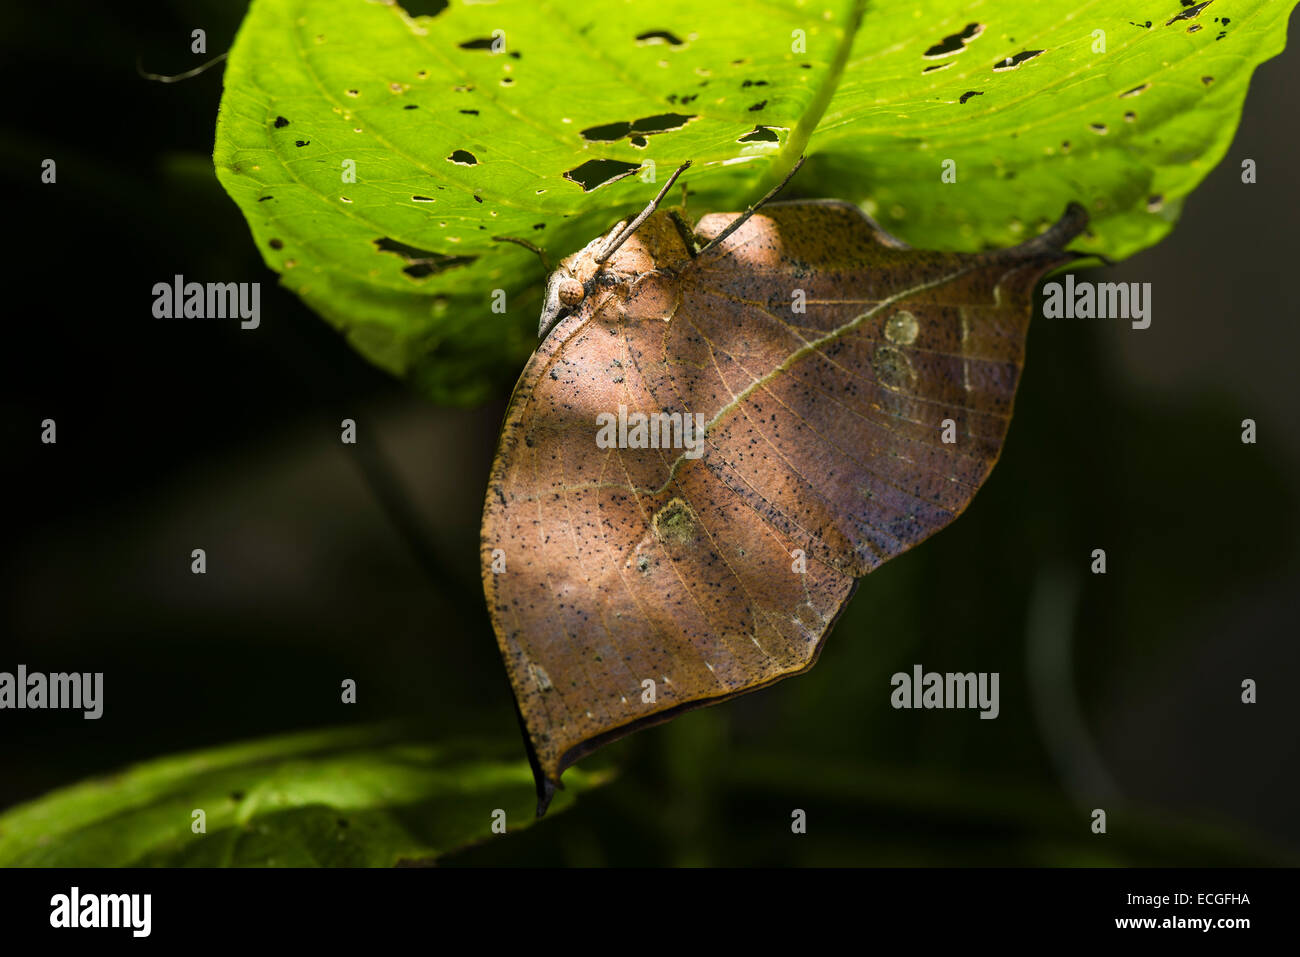 Un mimetizzata foglia morta butterfly nella luce solare a chiazze Foto Stock